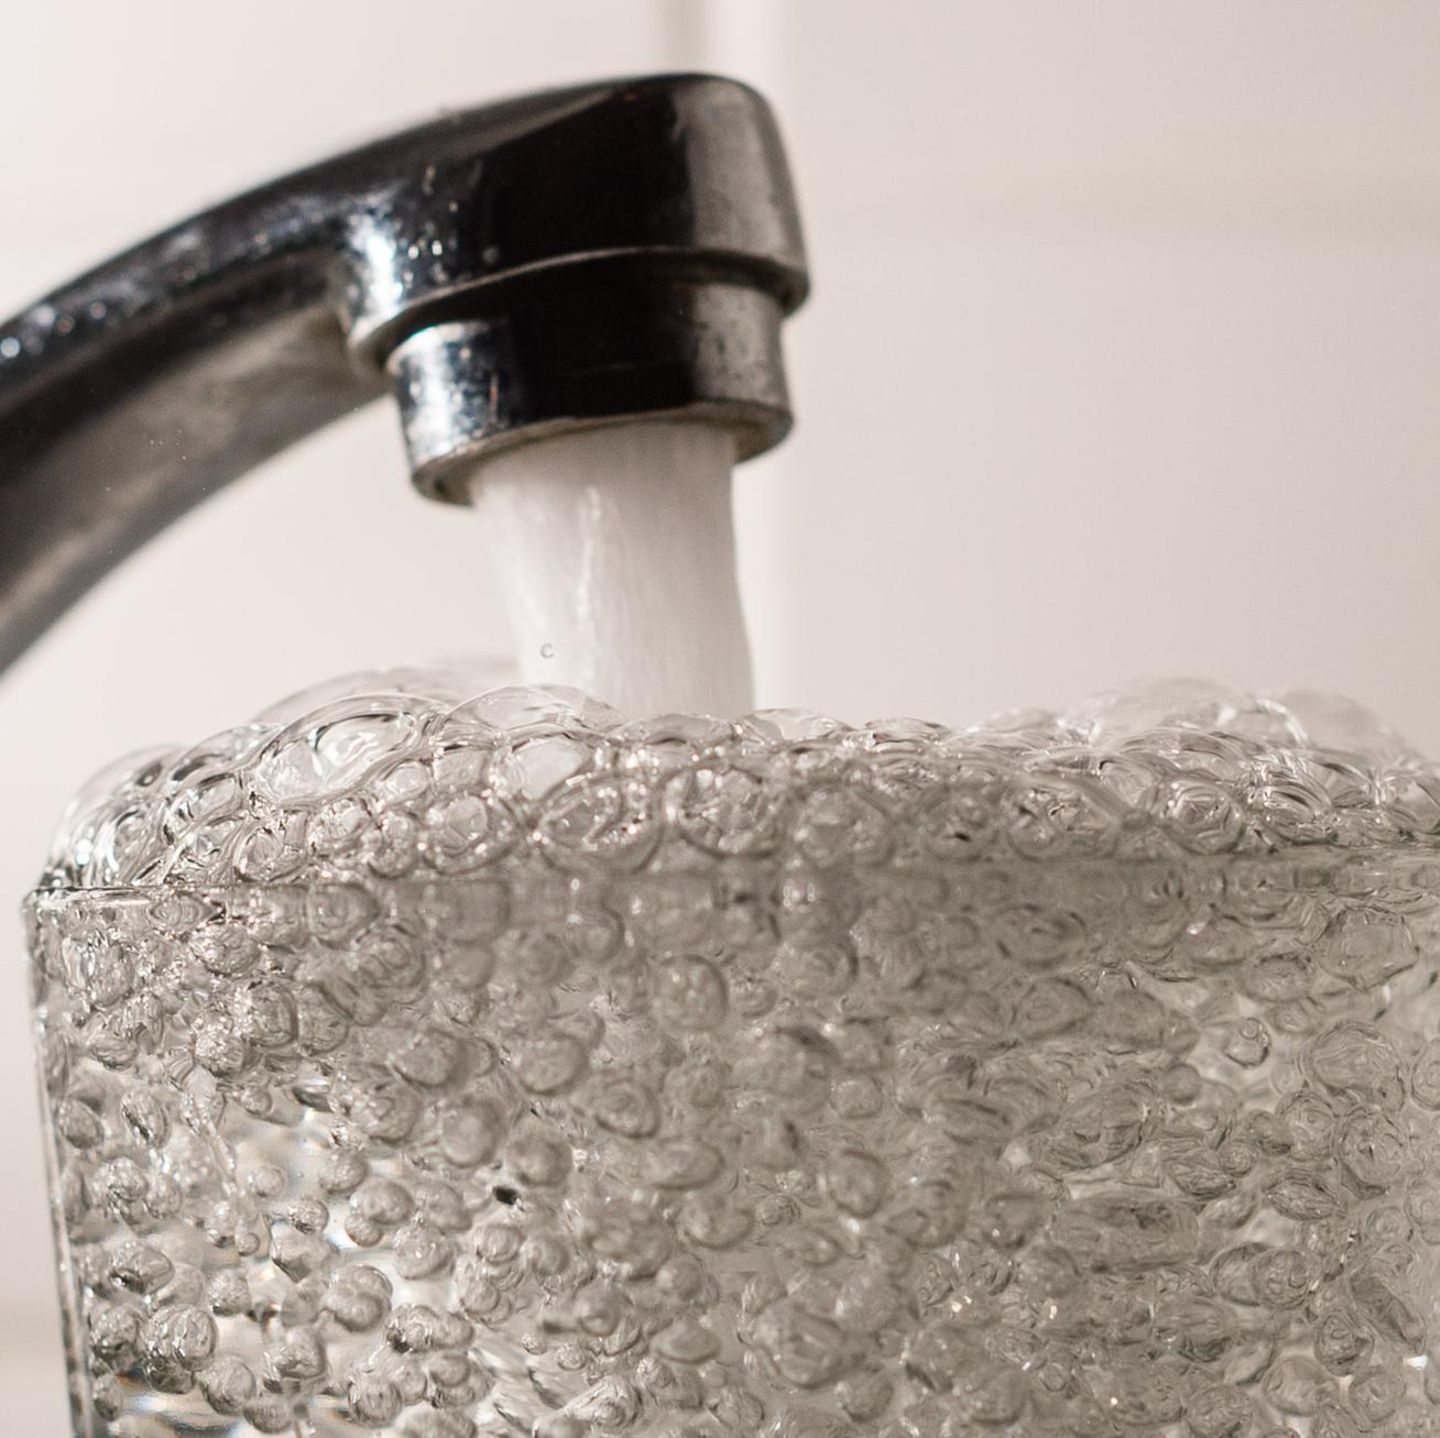 So schädlich können Wasserfilter für die Gesundheit sein - Laut